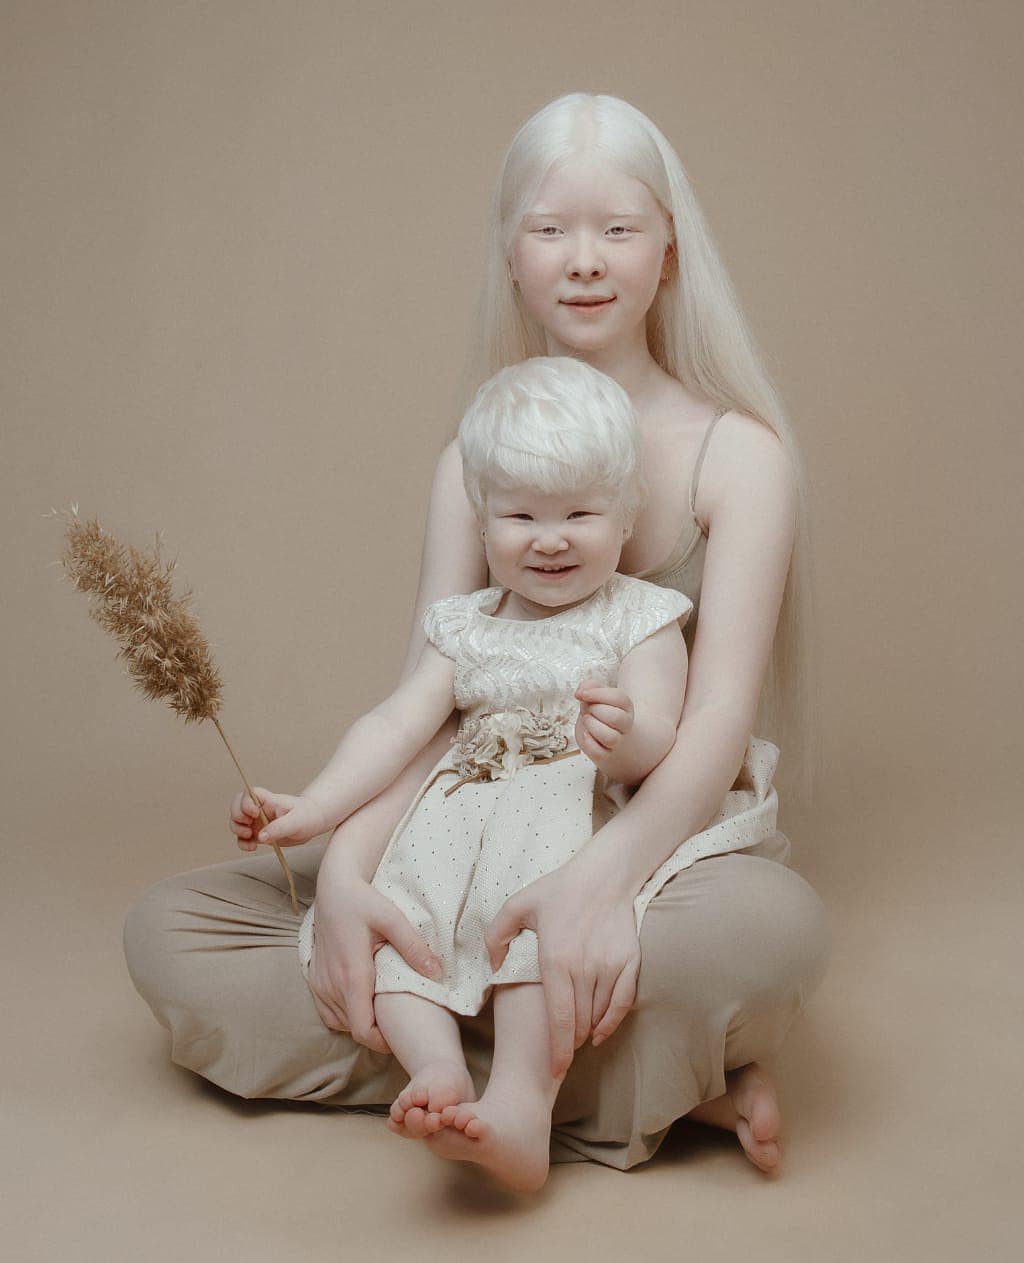 Сёстры альбиносы родились с разницей в 12 лет и покорили мир моды своей уникальностью необычной внешностью